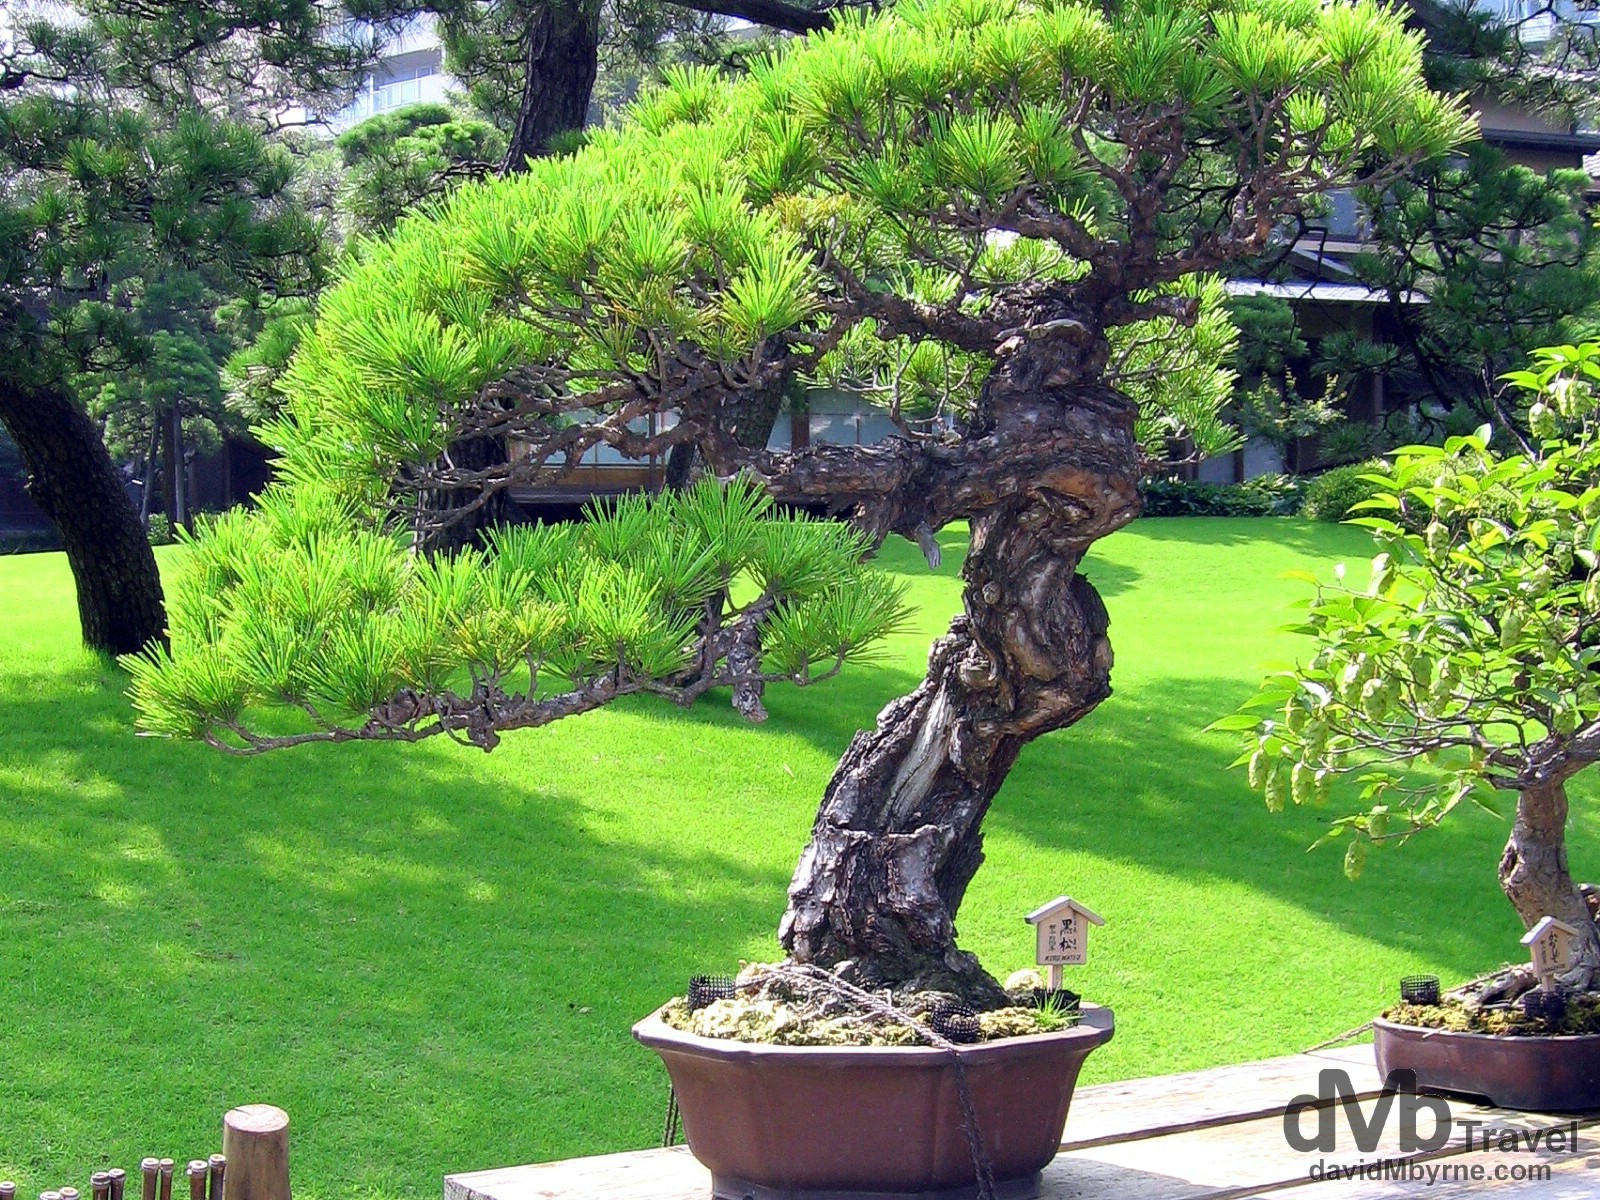 A bonsai tree in Happo-En Gardens, Tokyo, Japan. July 15th, 2005.